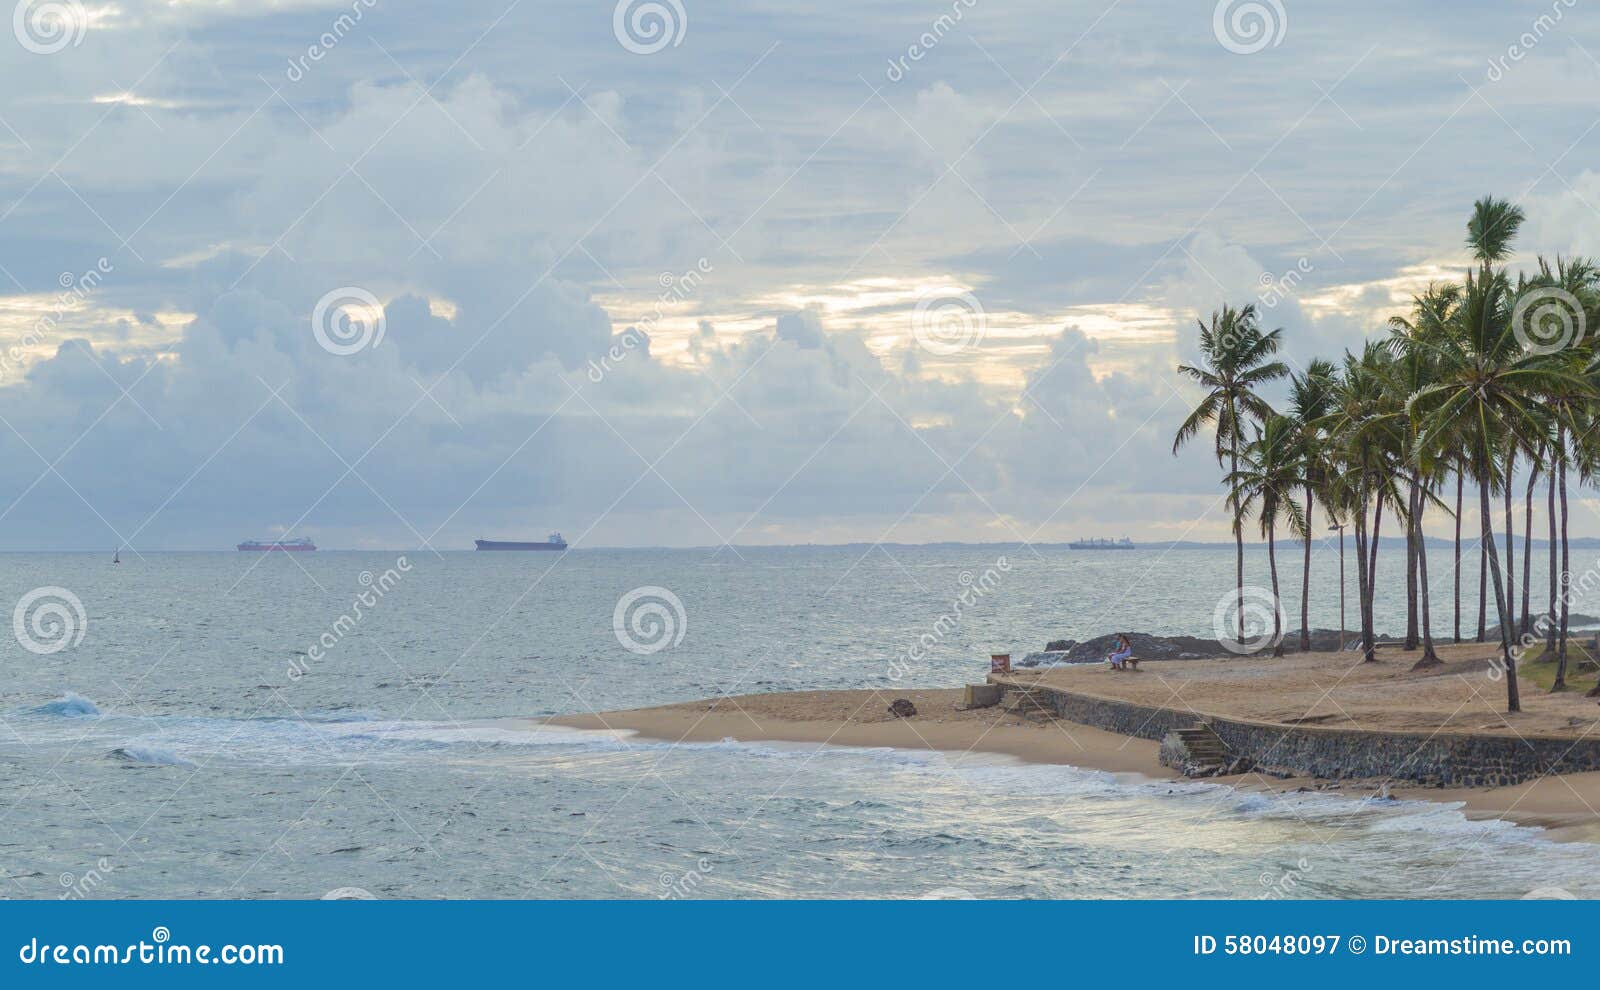 palm and blue sea and blue sky ondina salvador bahia brazil